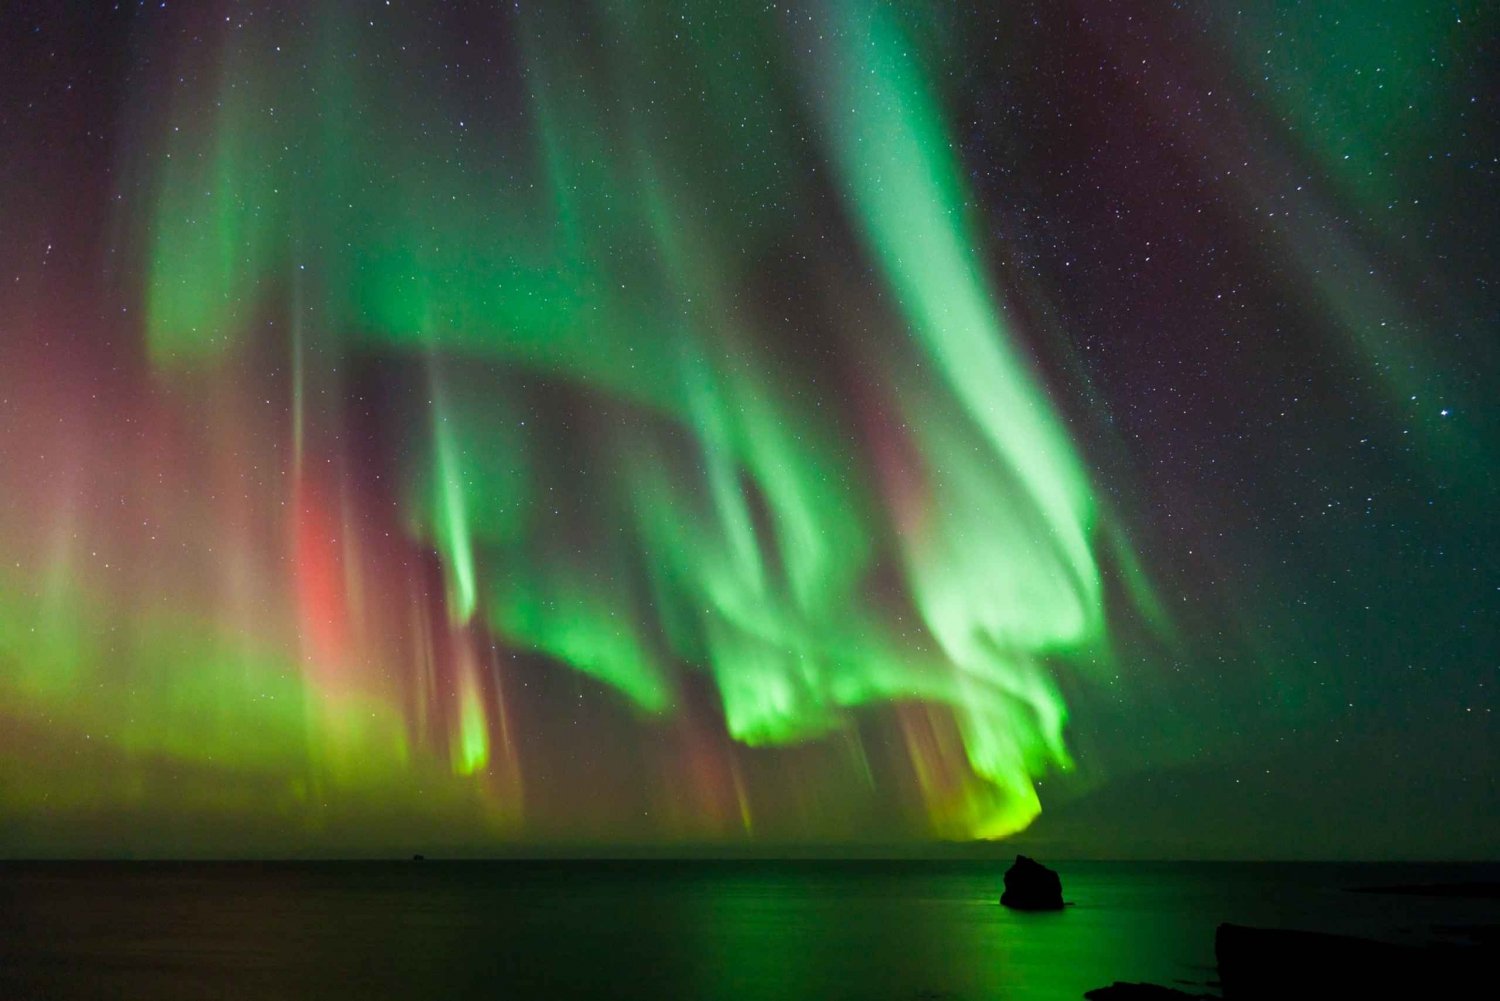 Reykjavik : visite premium aurores boréales et photos